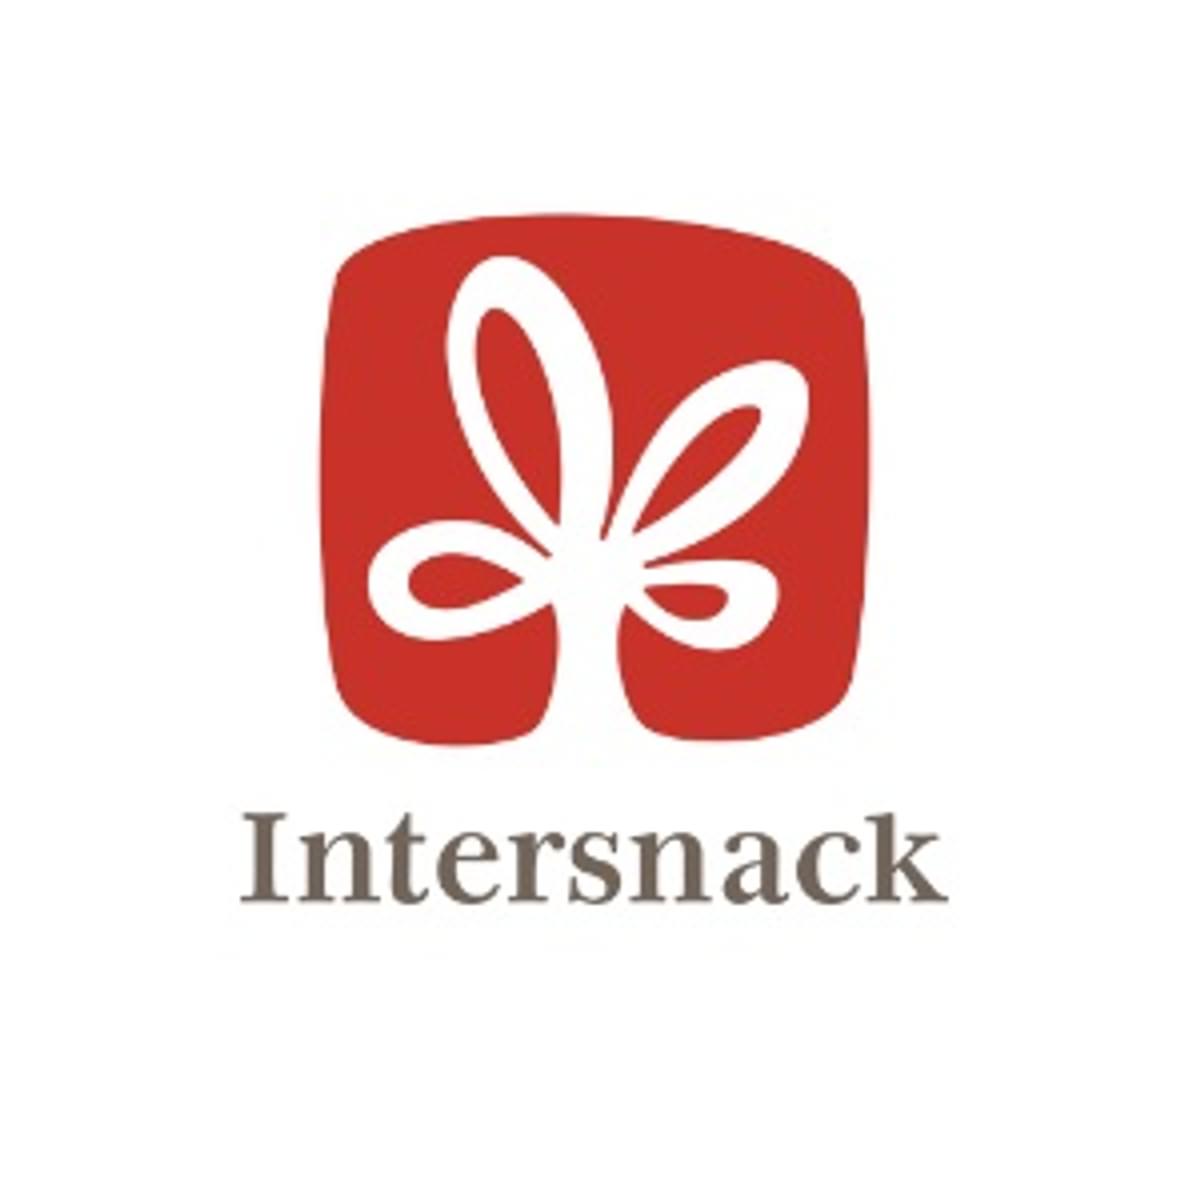 Intersnack gebruikt Infor bij digitale transformatie image